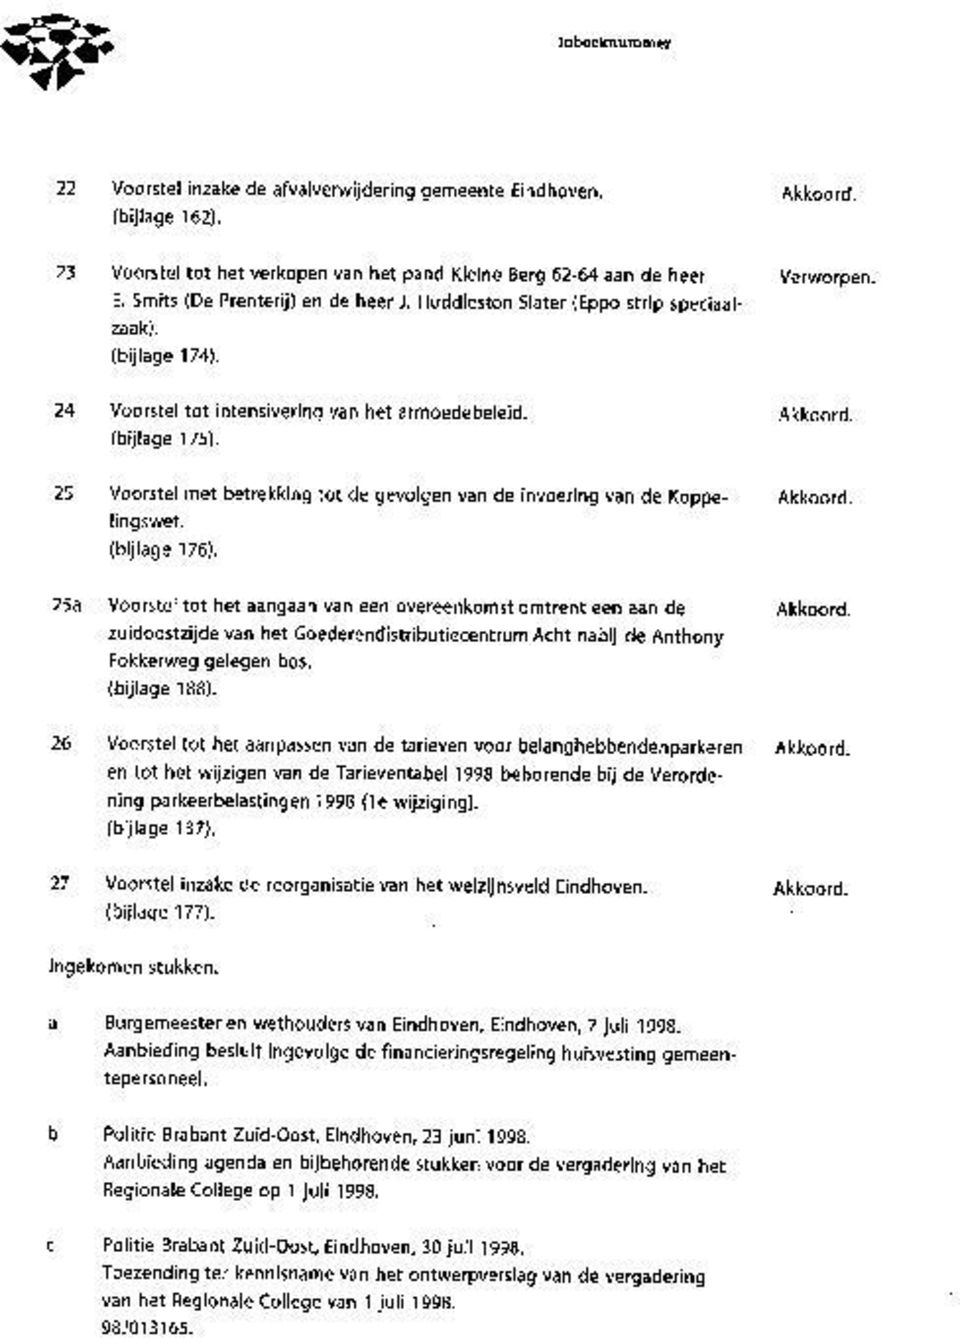 25 Voorstel met betrekking tot de gevolgen van de invoering van de Koppe- ling s wet. (bijlage 176).